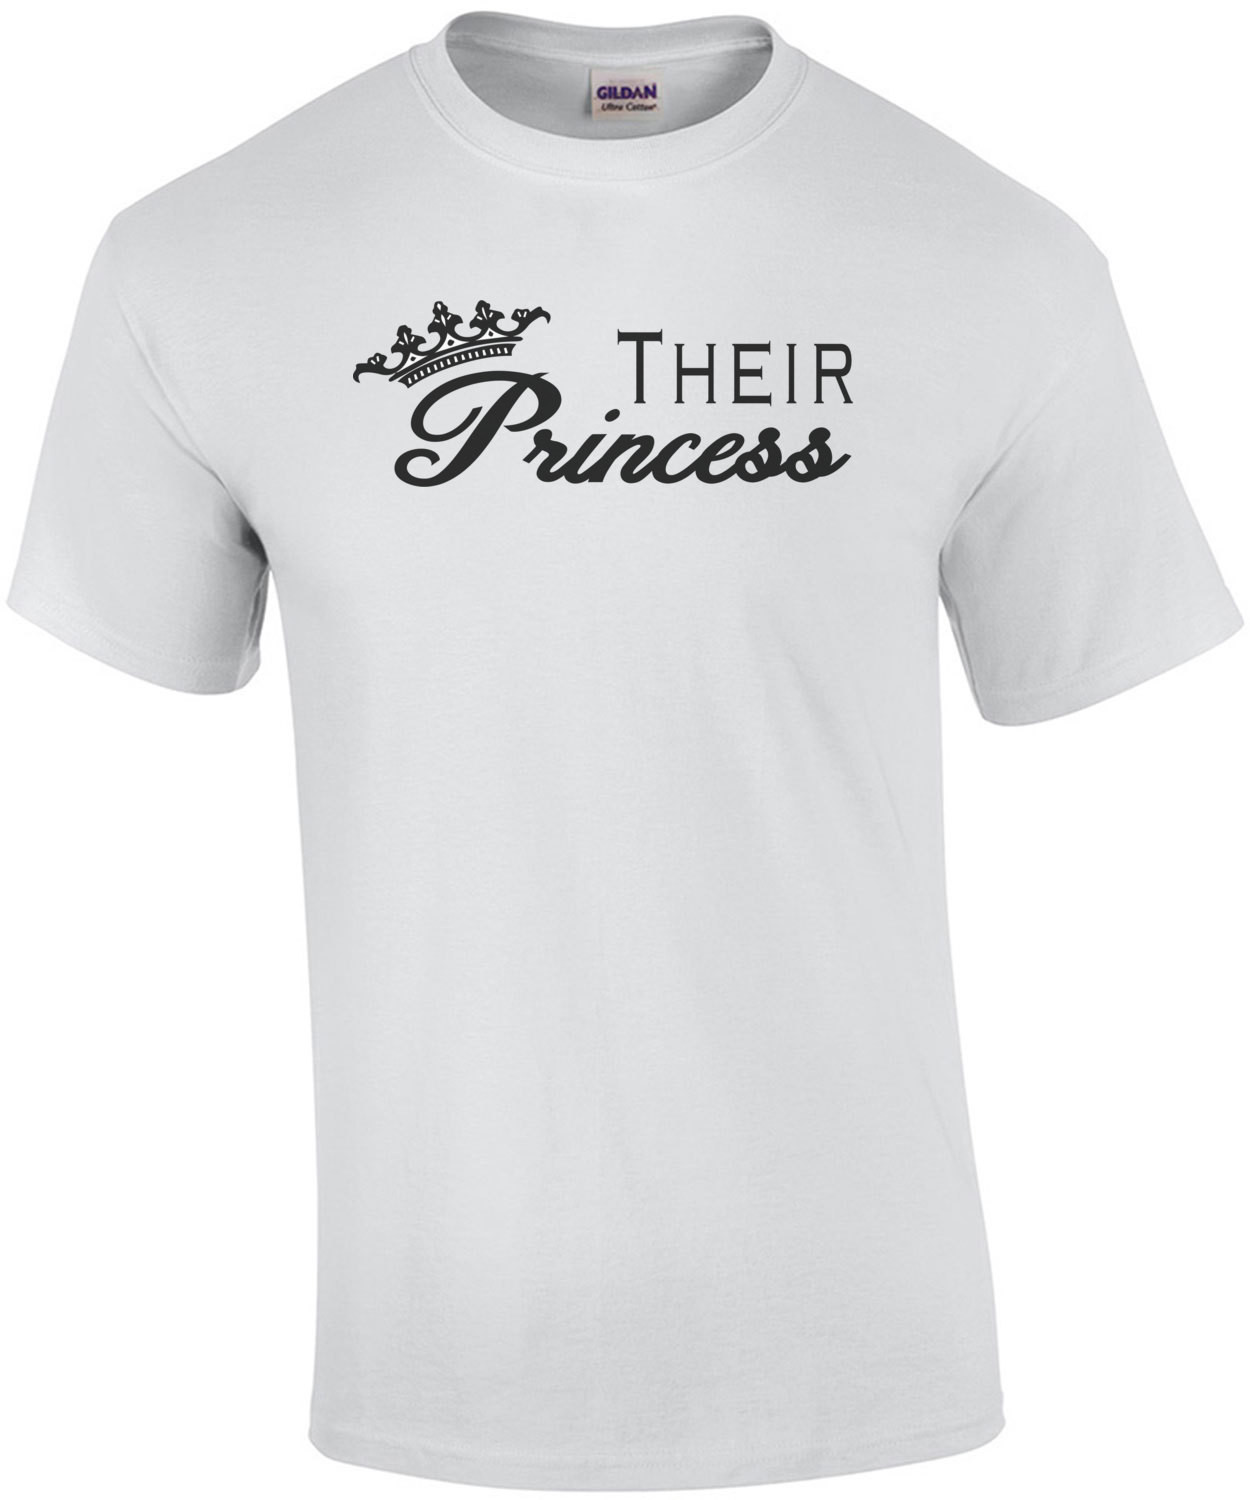 Their Princess T-Shirt